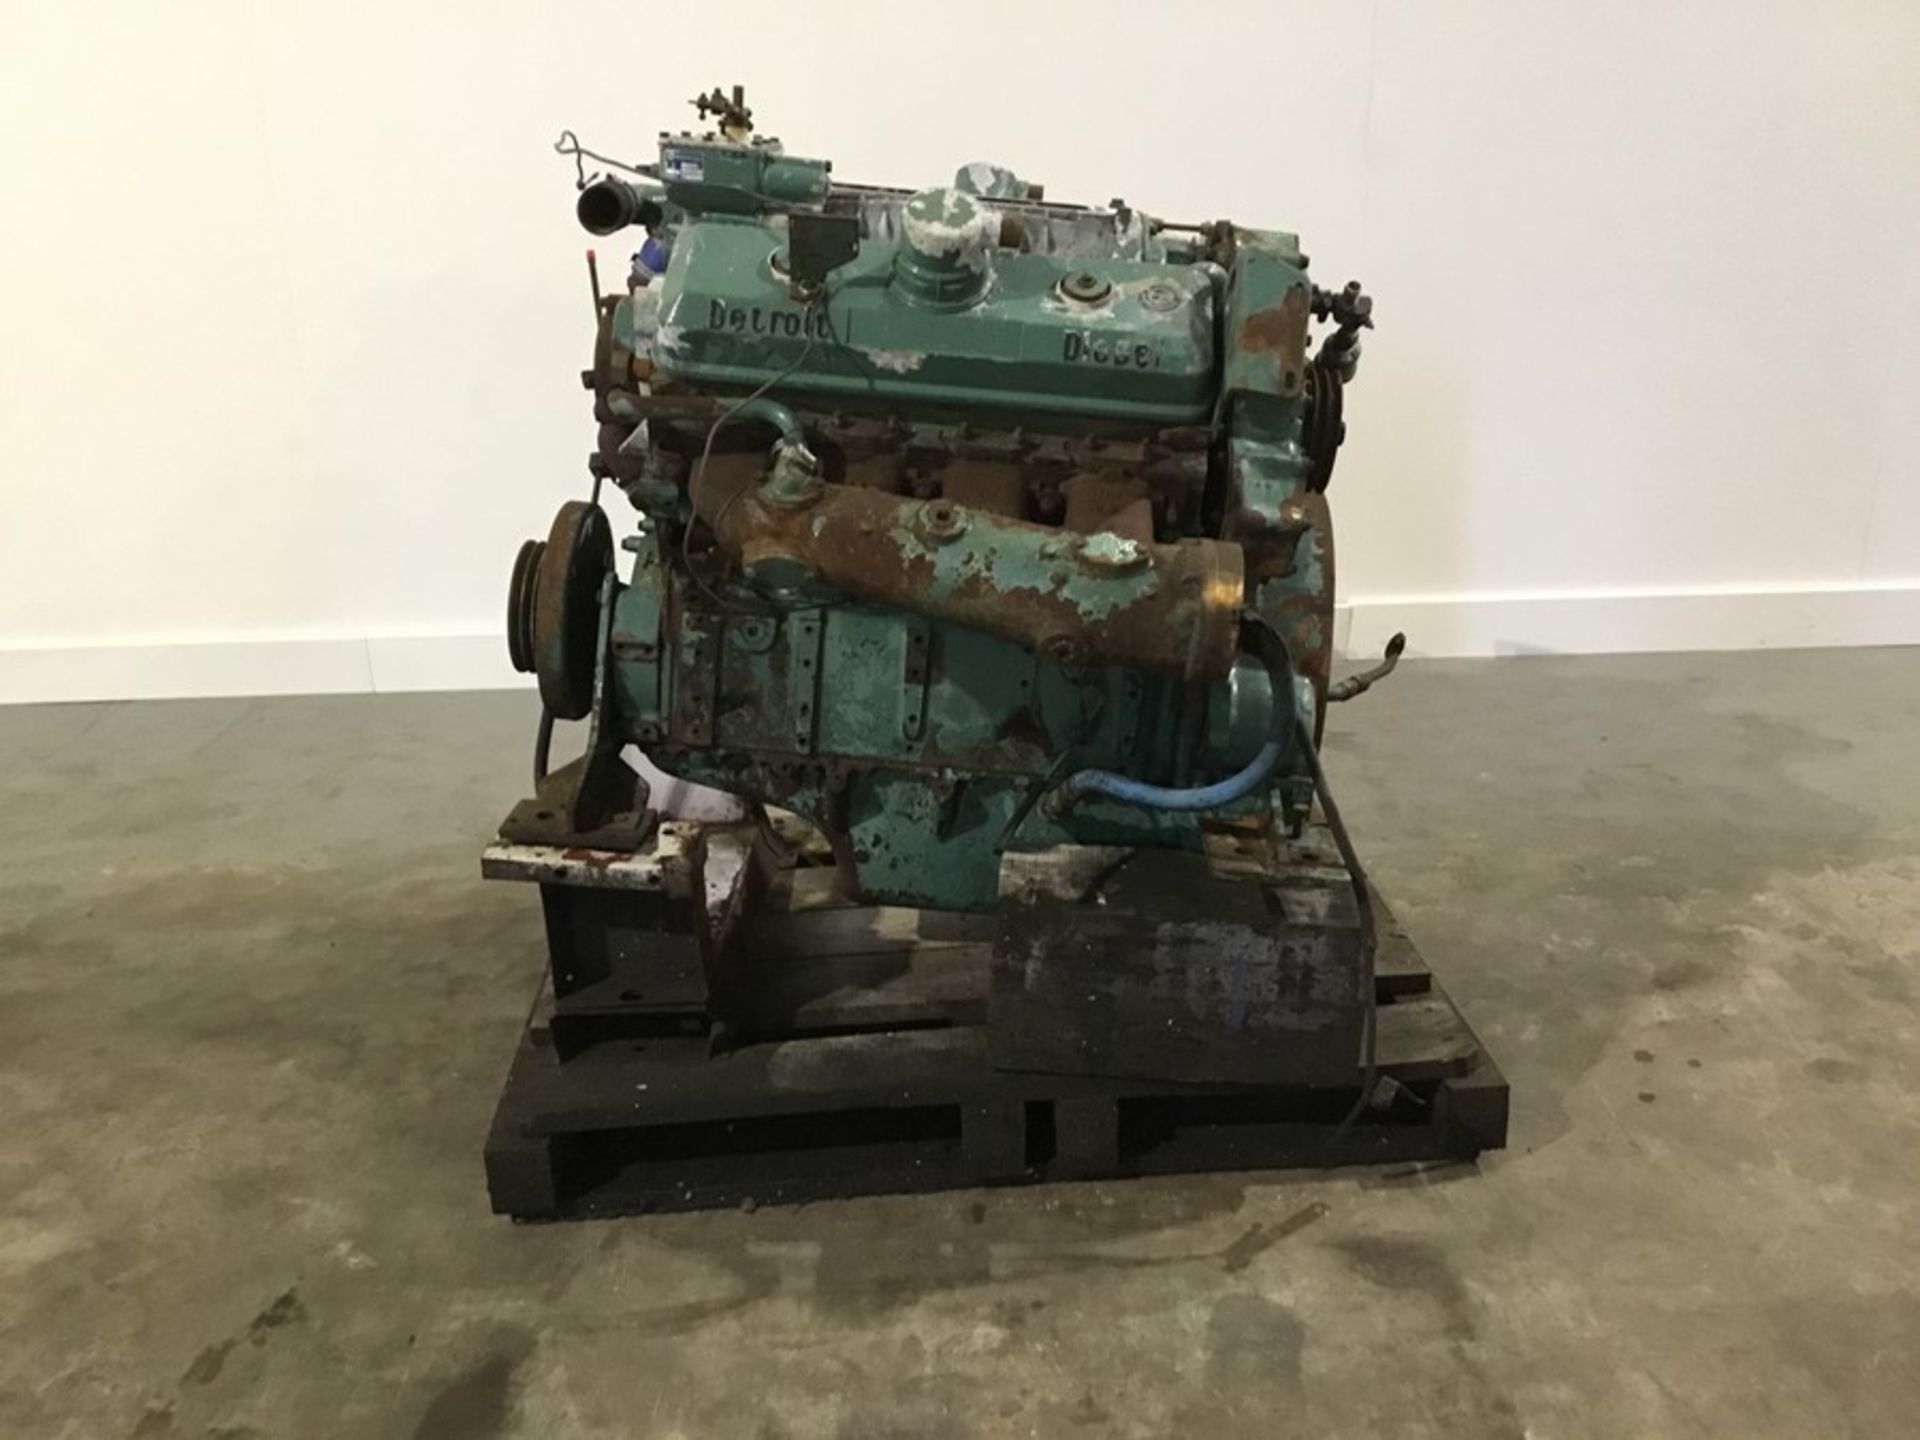 Detroit 8V71 Diesel Engine: Detroit 8v71 v8 Non Turbo Serial Number: 8FW000229*8082-3301 used - Image 6 of 18